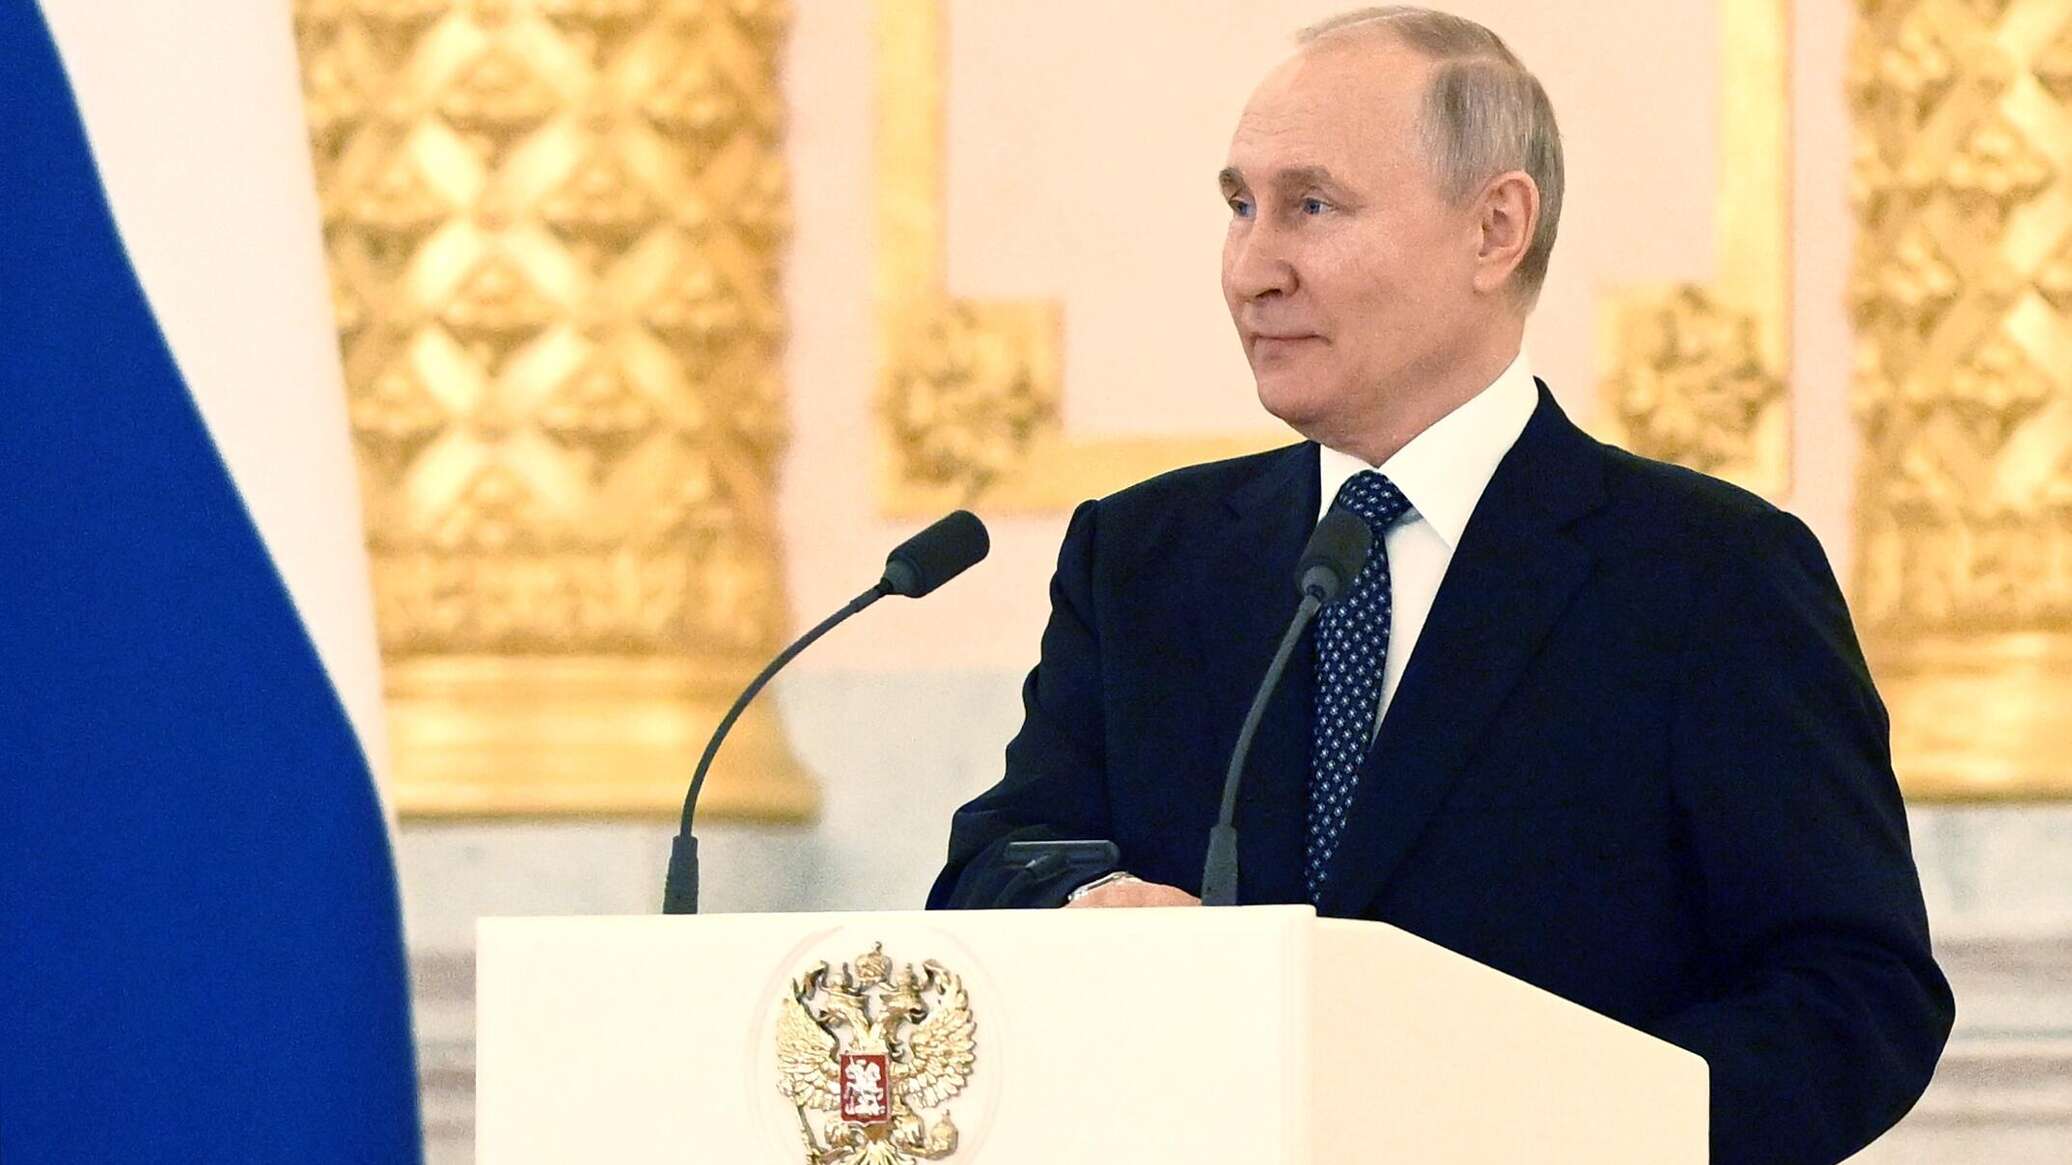 بوتين: الوضع الاقتصادي العام في روسيا يتطور بثبات